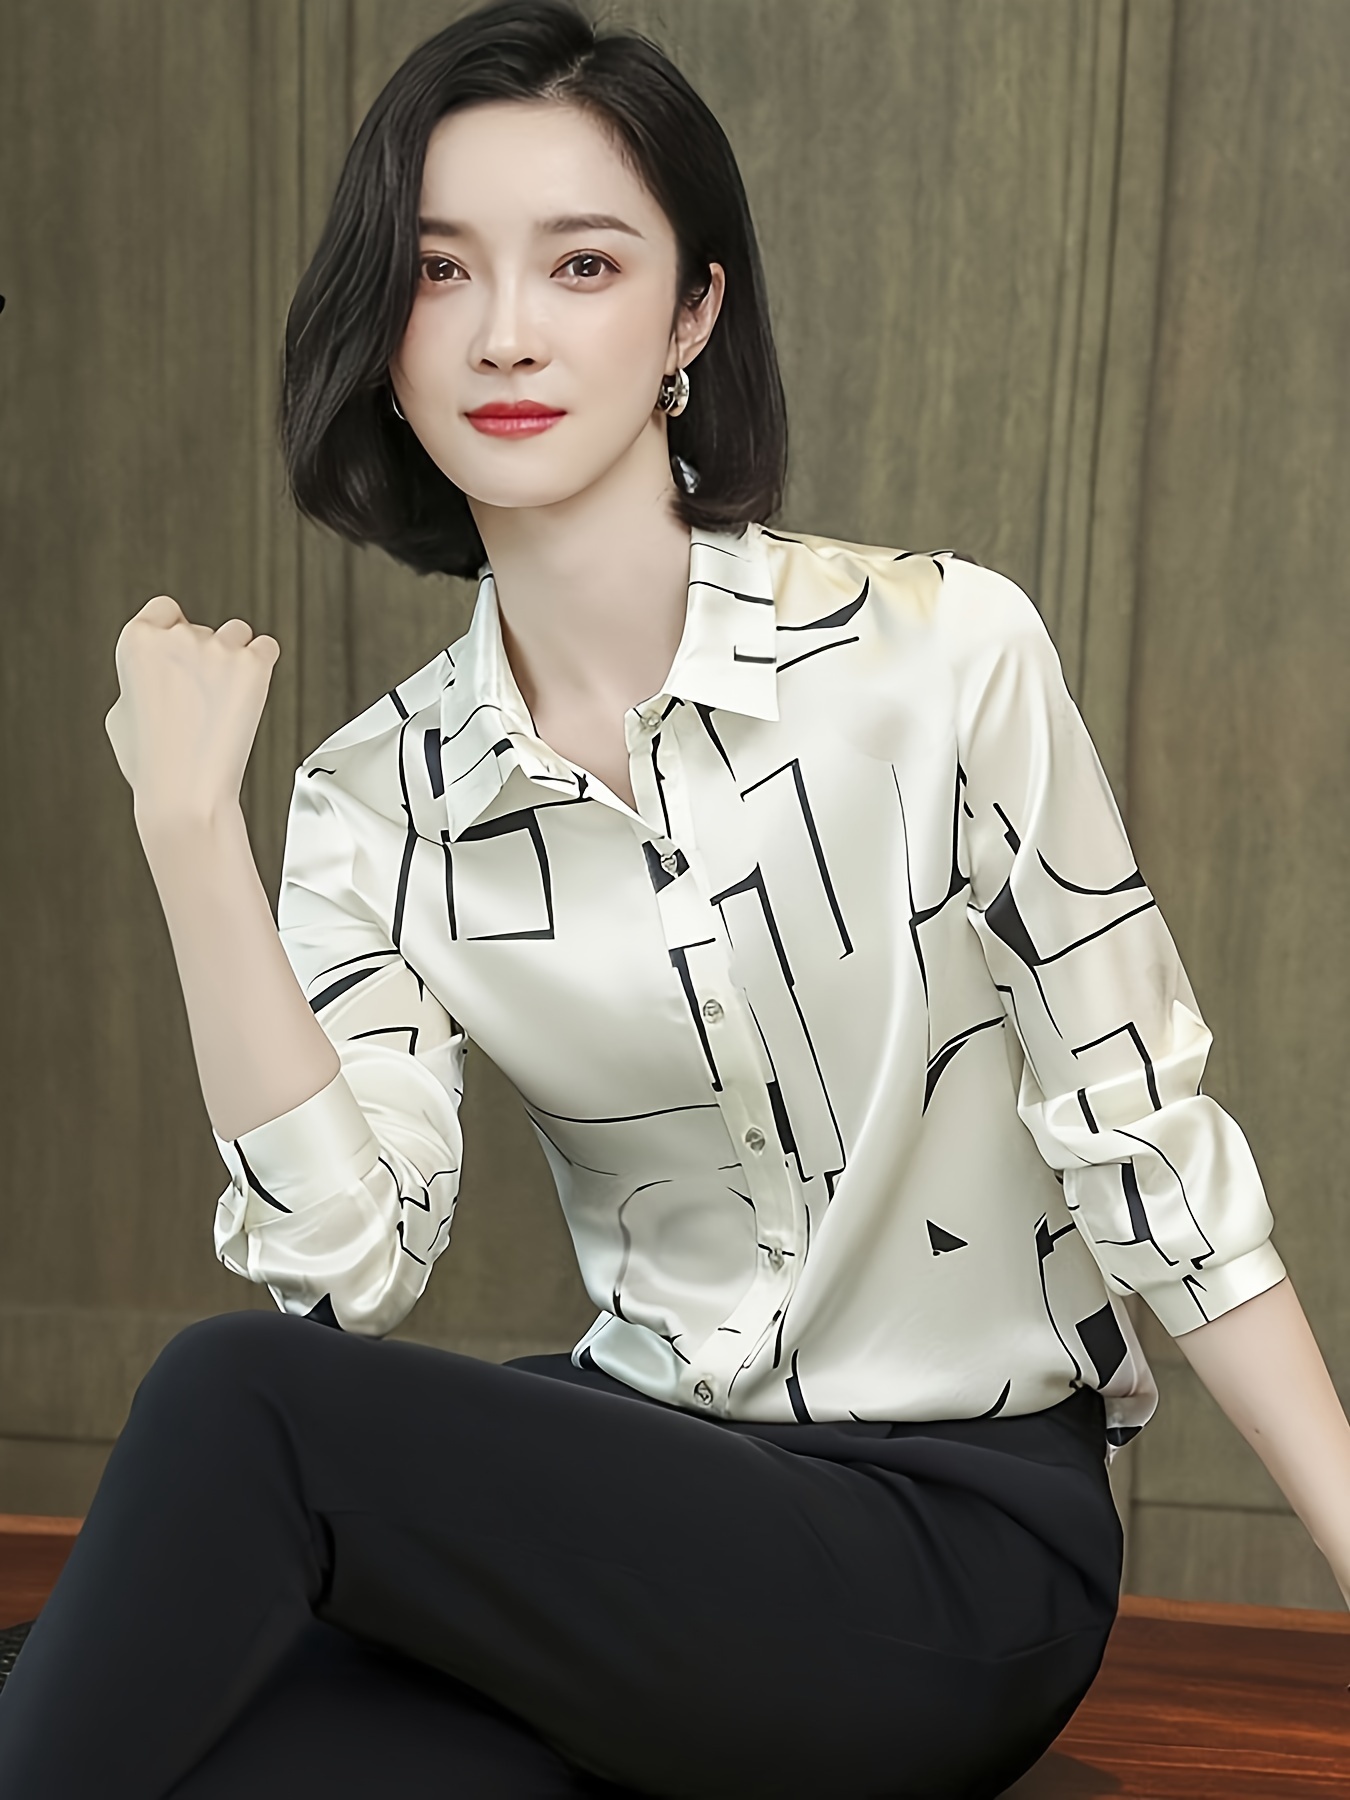 Elegante blusa suelta sólida, blusa de manga larga con solapa, blusas  elegantes y con estilo para la oficina y el trabajo, ropa de mujer